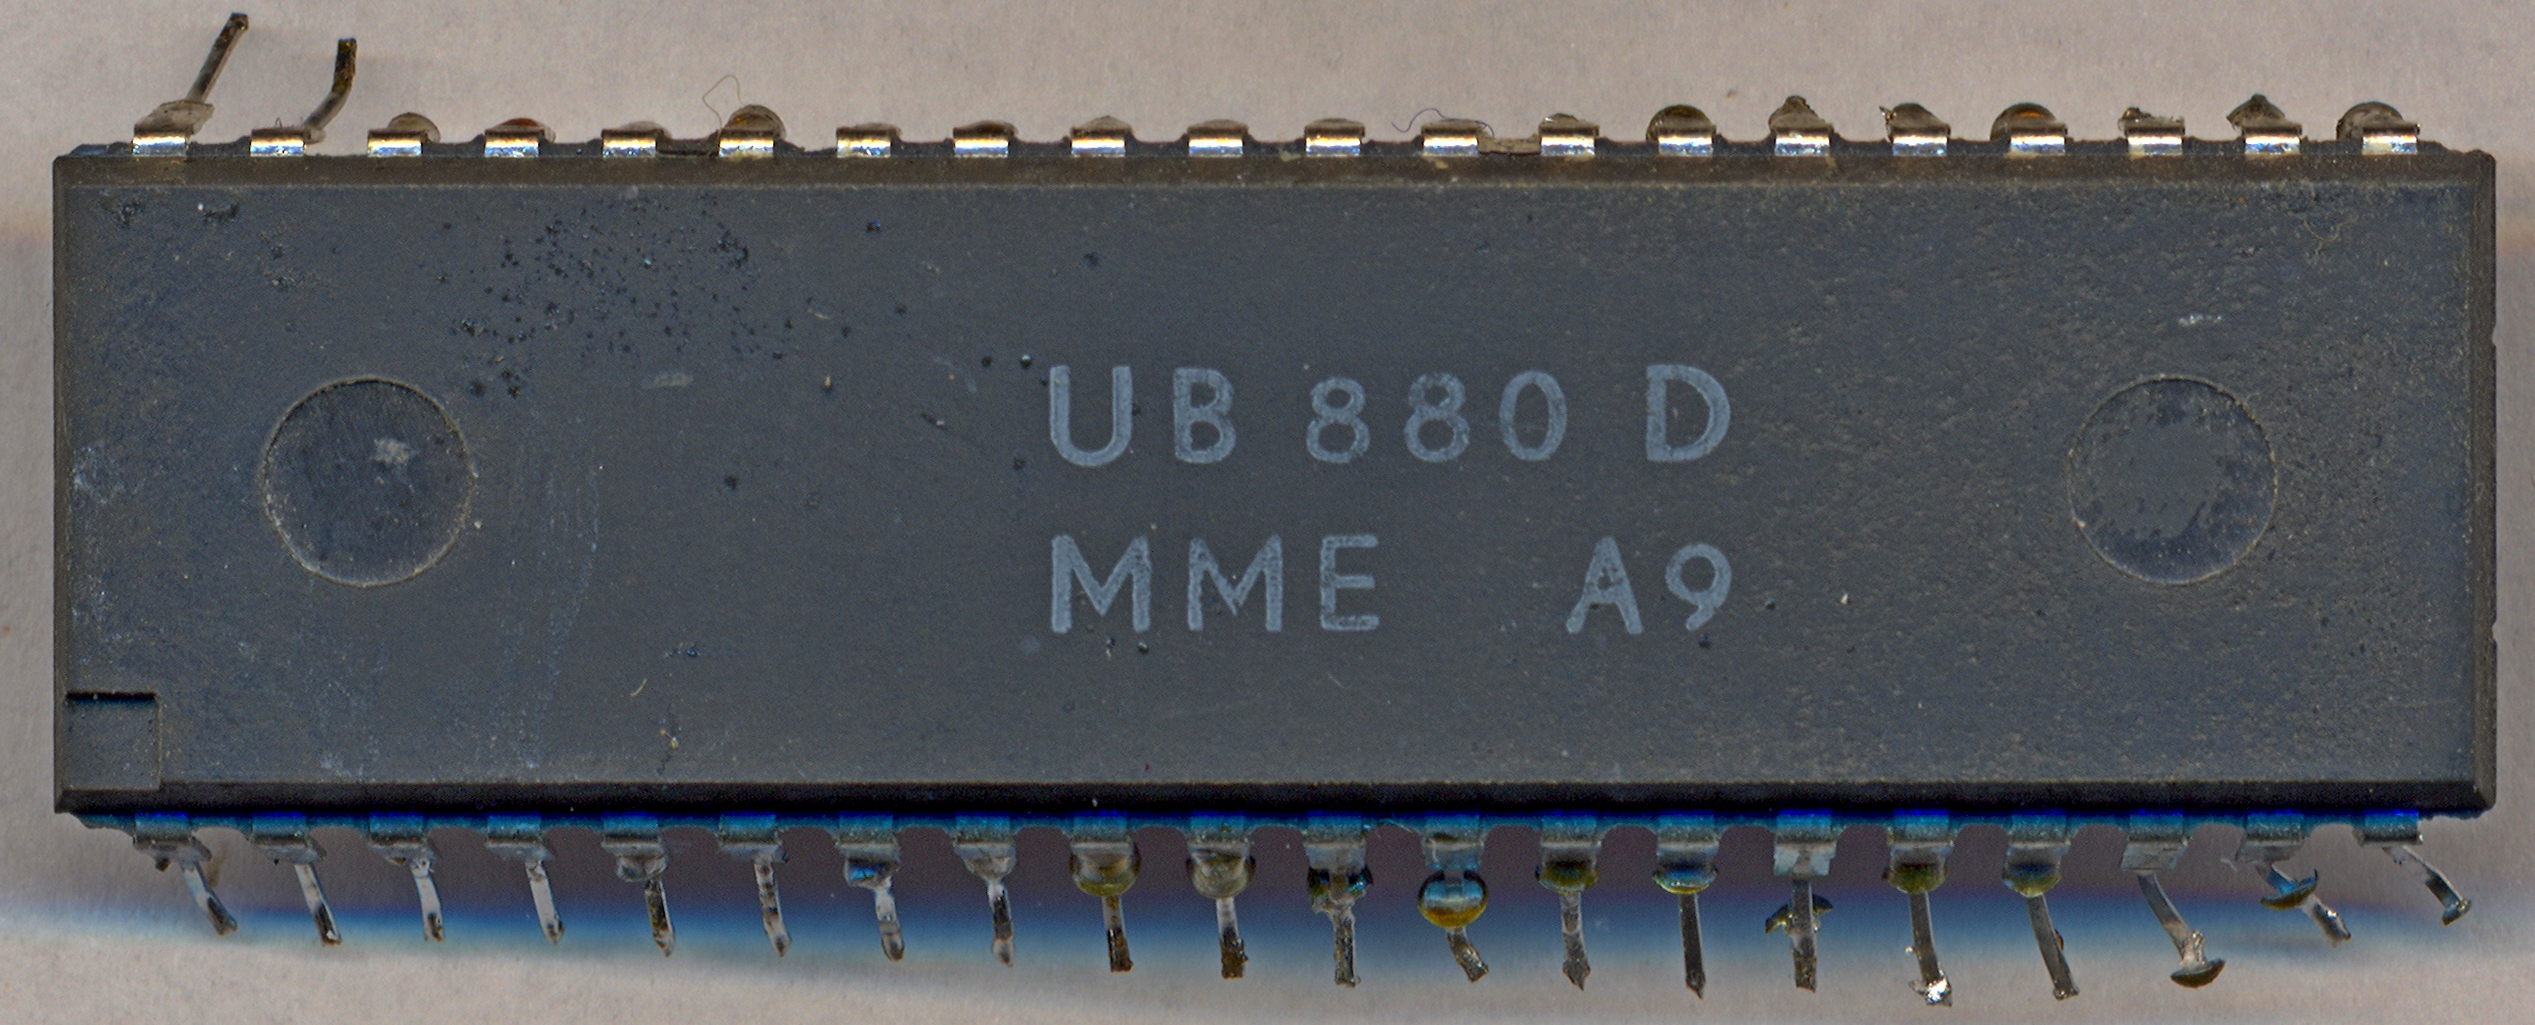 UB880D 0